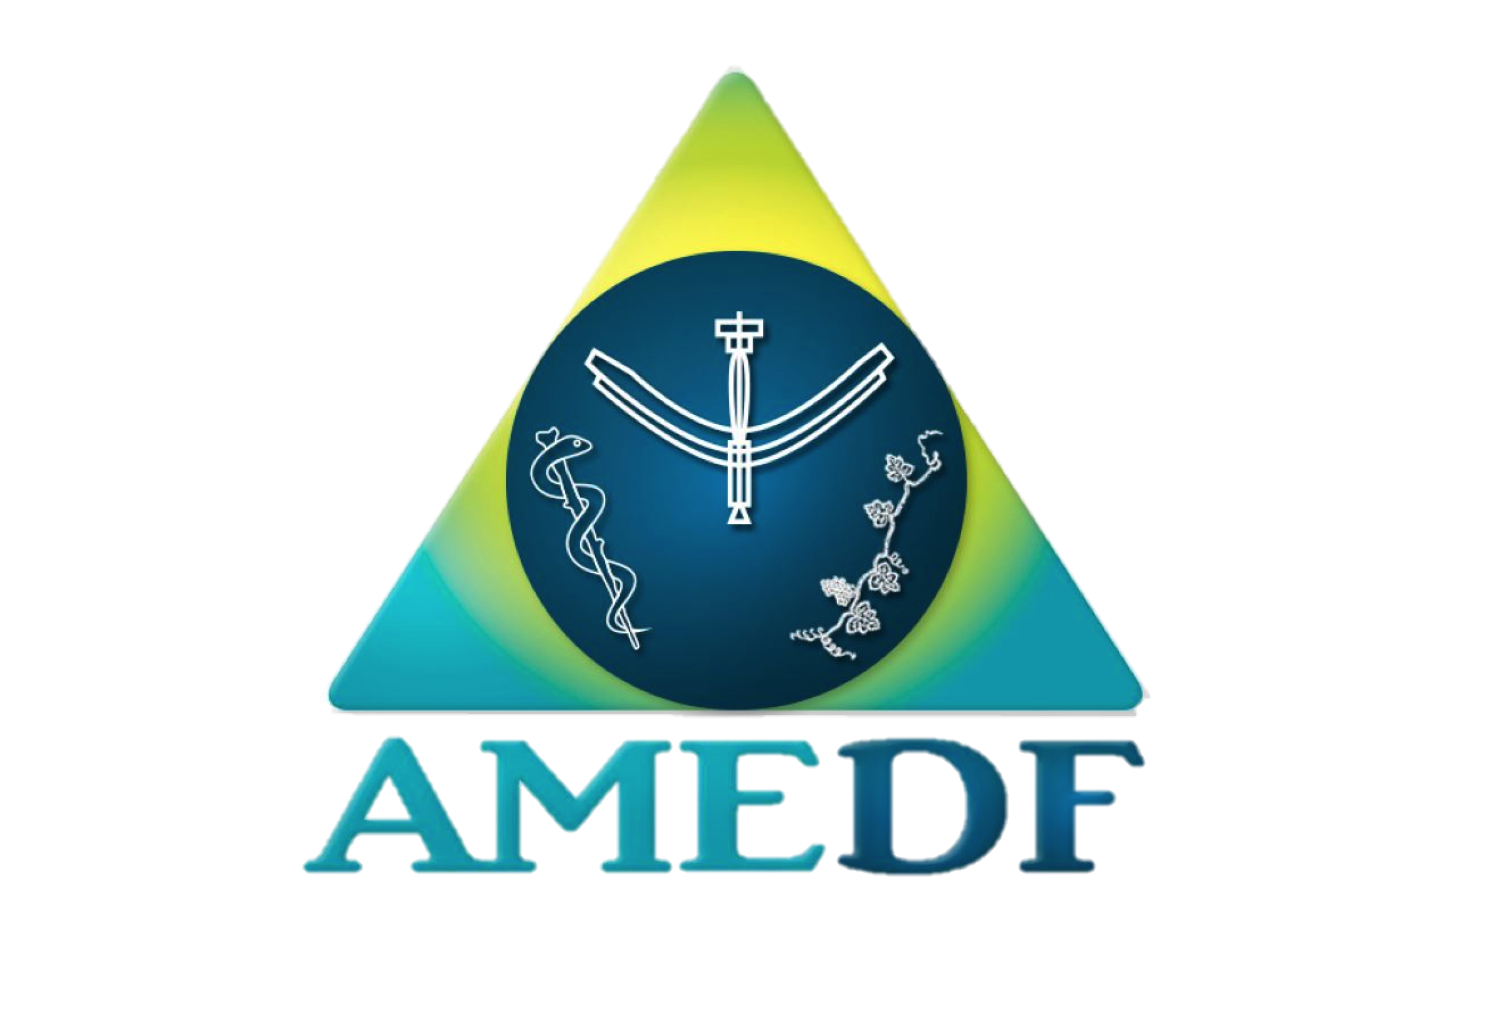 logo AME-DF - Associação Mèdico Espírita do DF